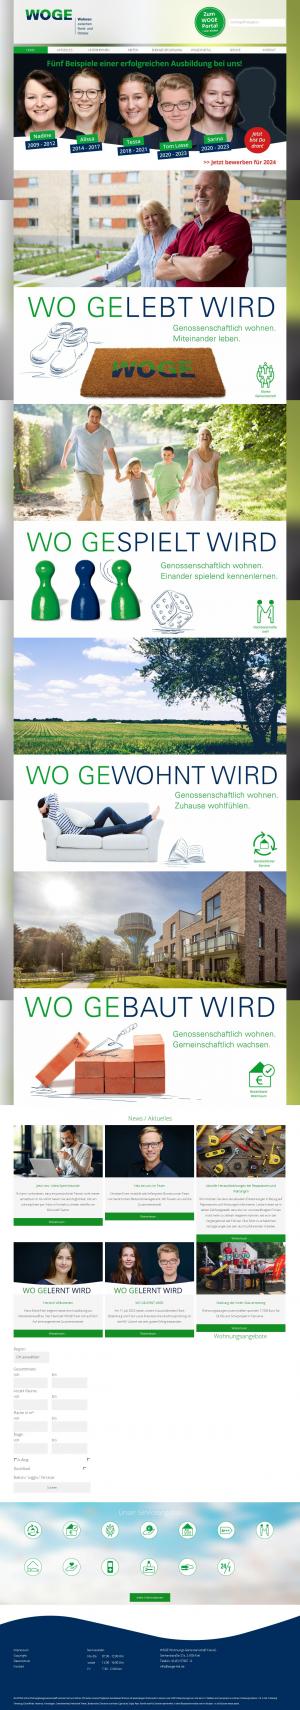 www.wogekiel.de